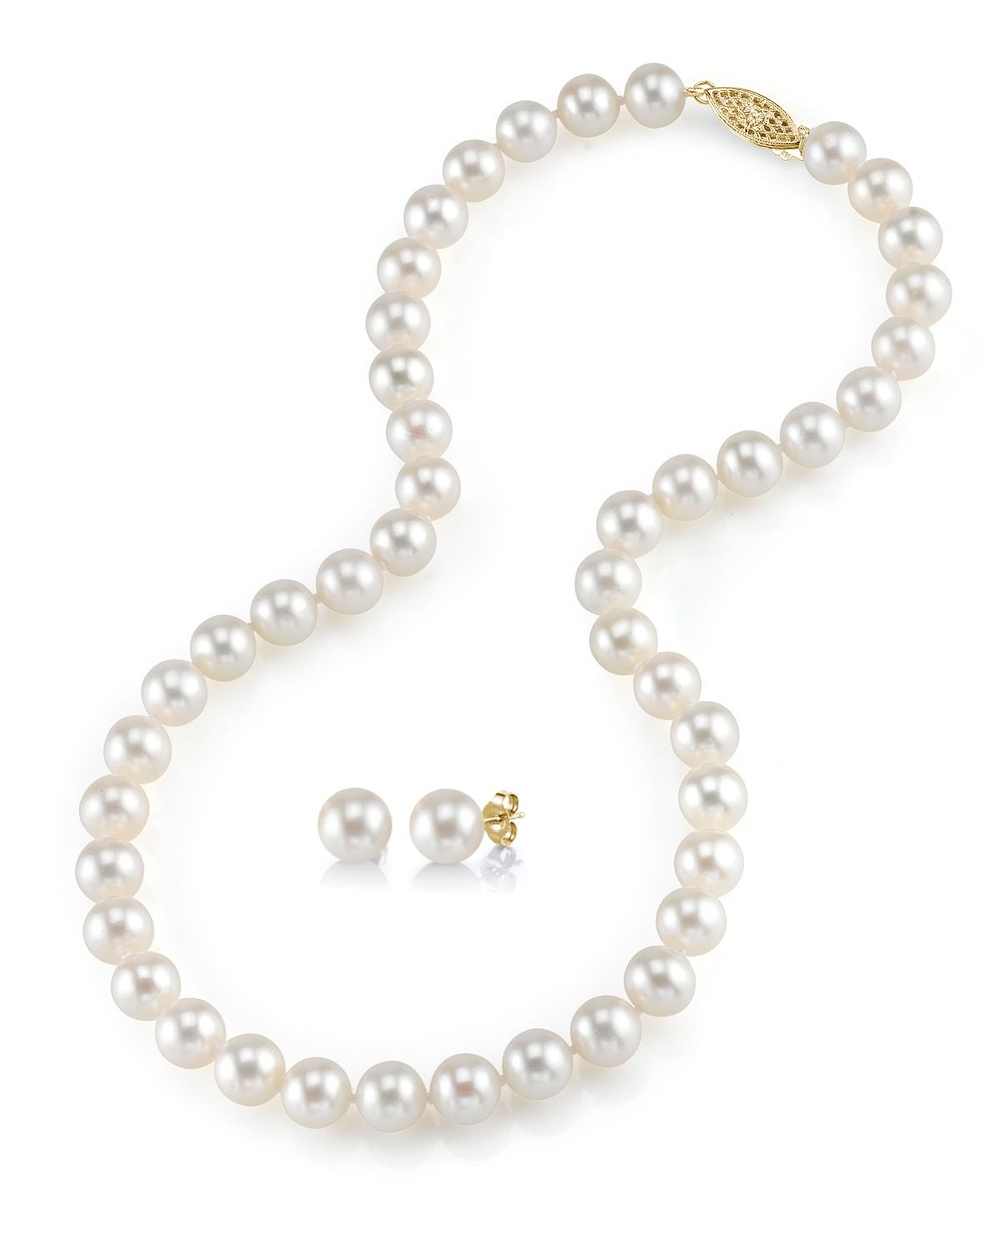 7-8mm freshwater pearl necklace u0026 earrings DTWOASH